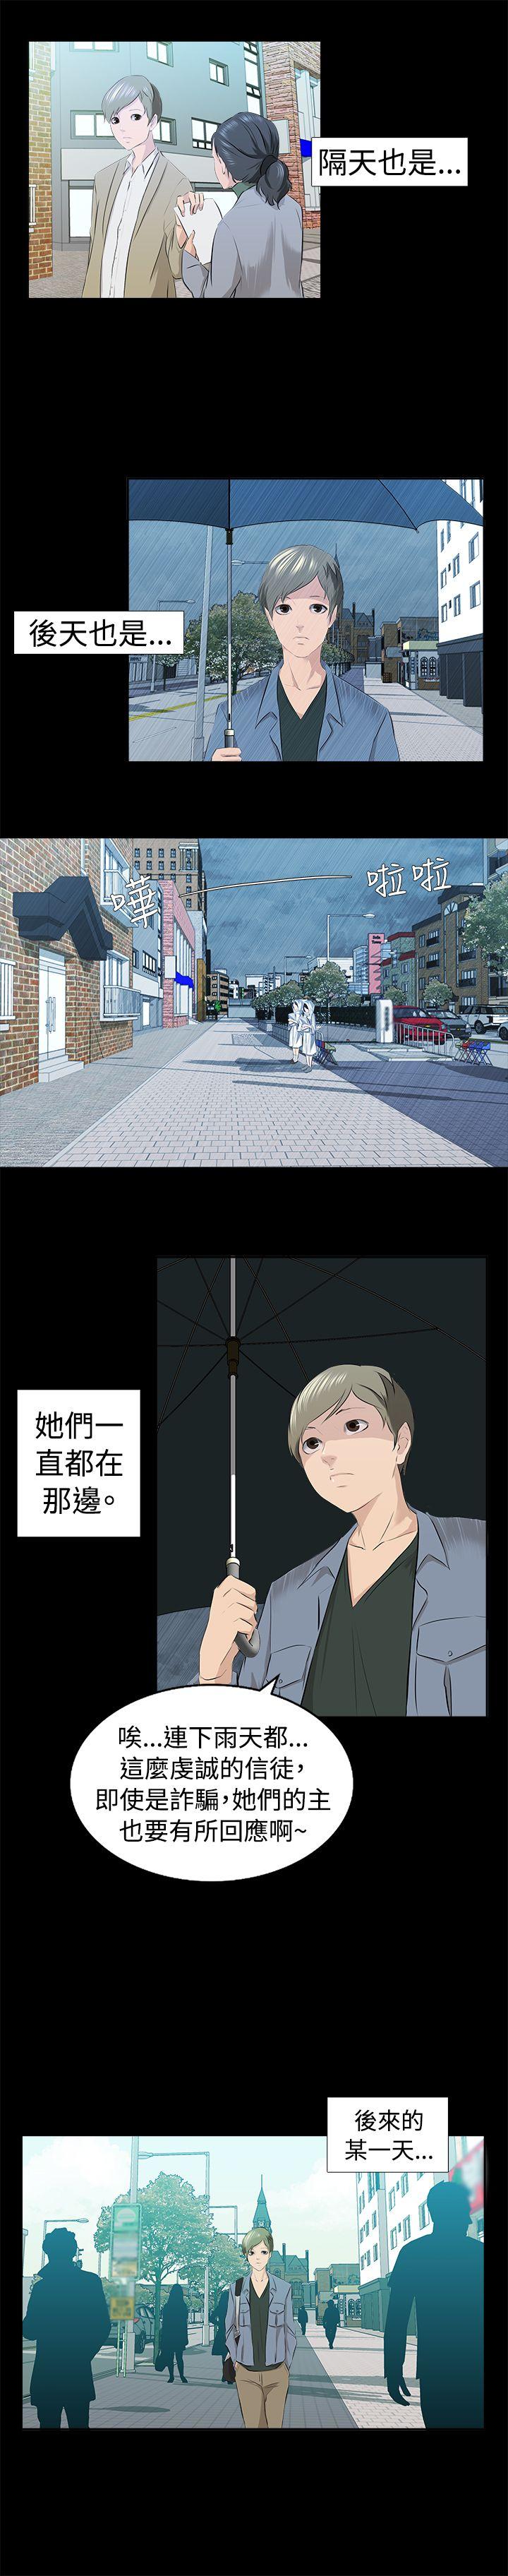 秘密Story  邪教之女(上) 漫画图片3.jpg